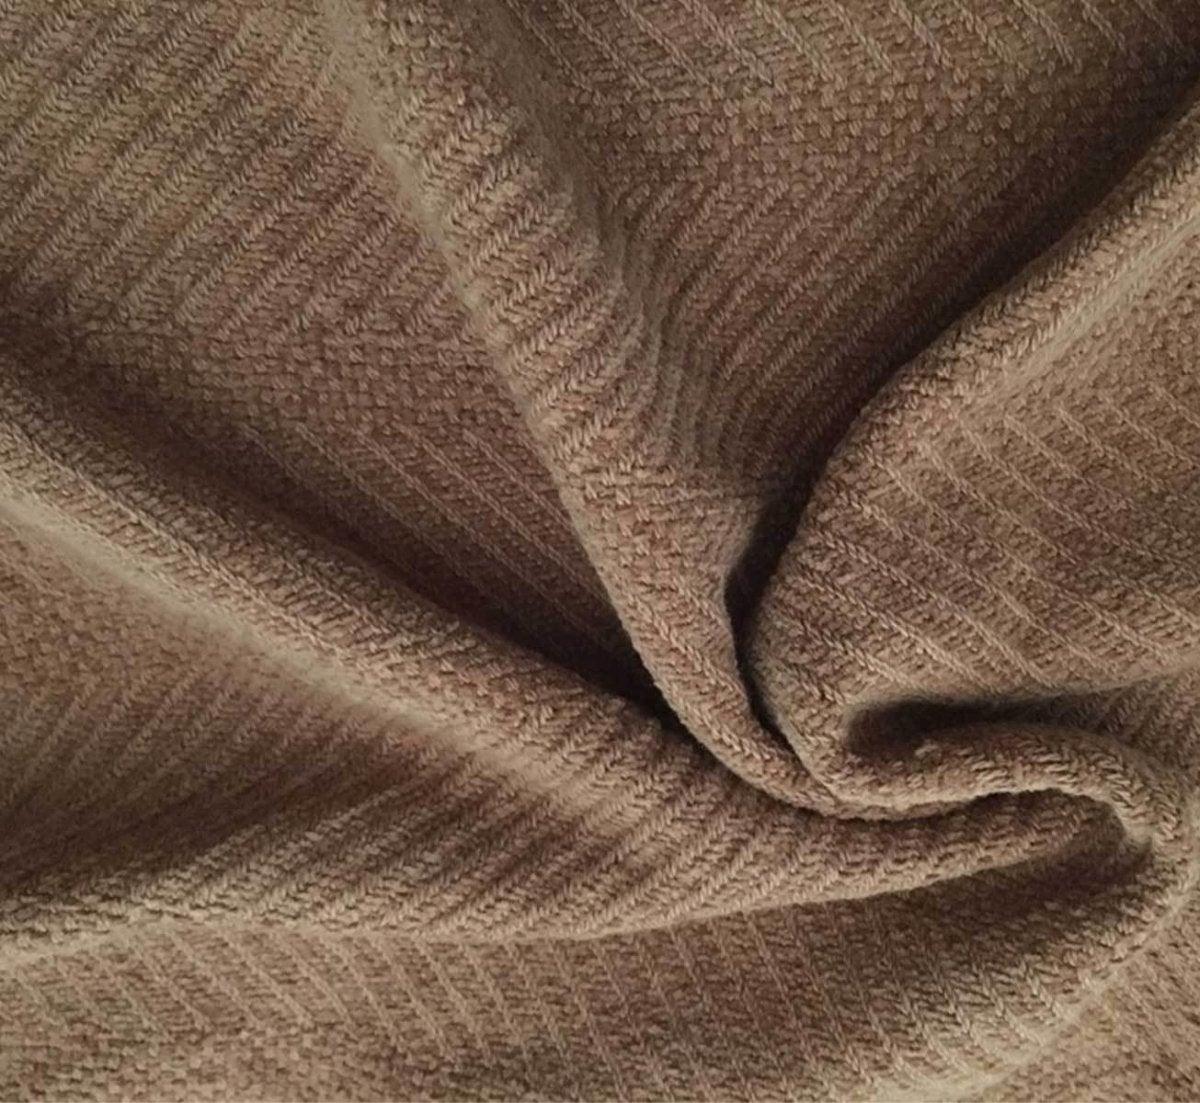 Chanel fleece blanket, Brown throw blanket